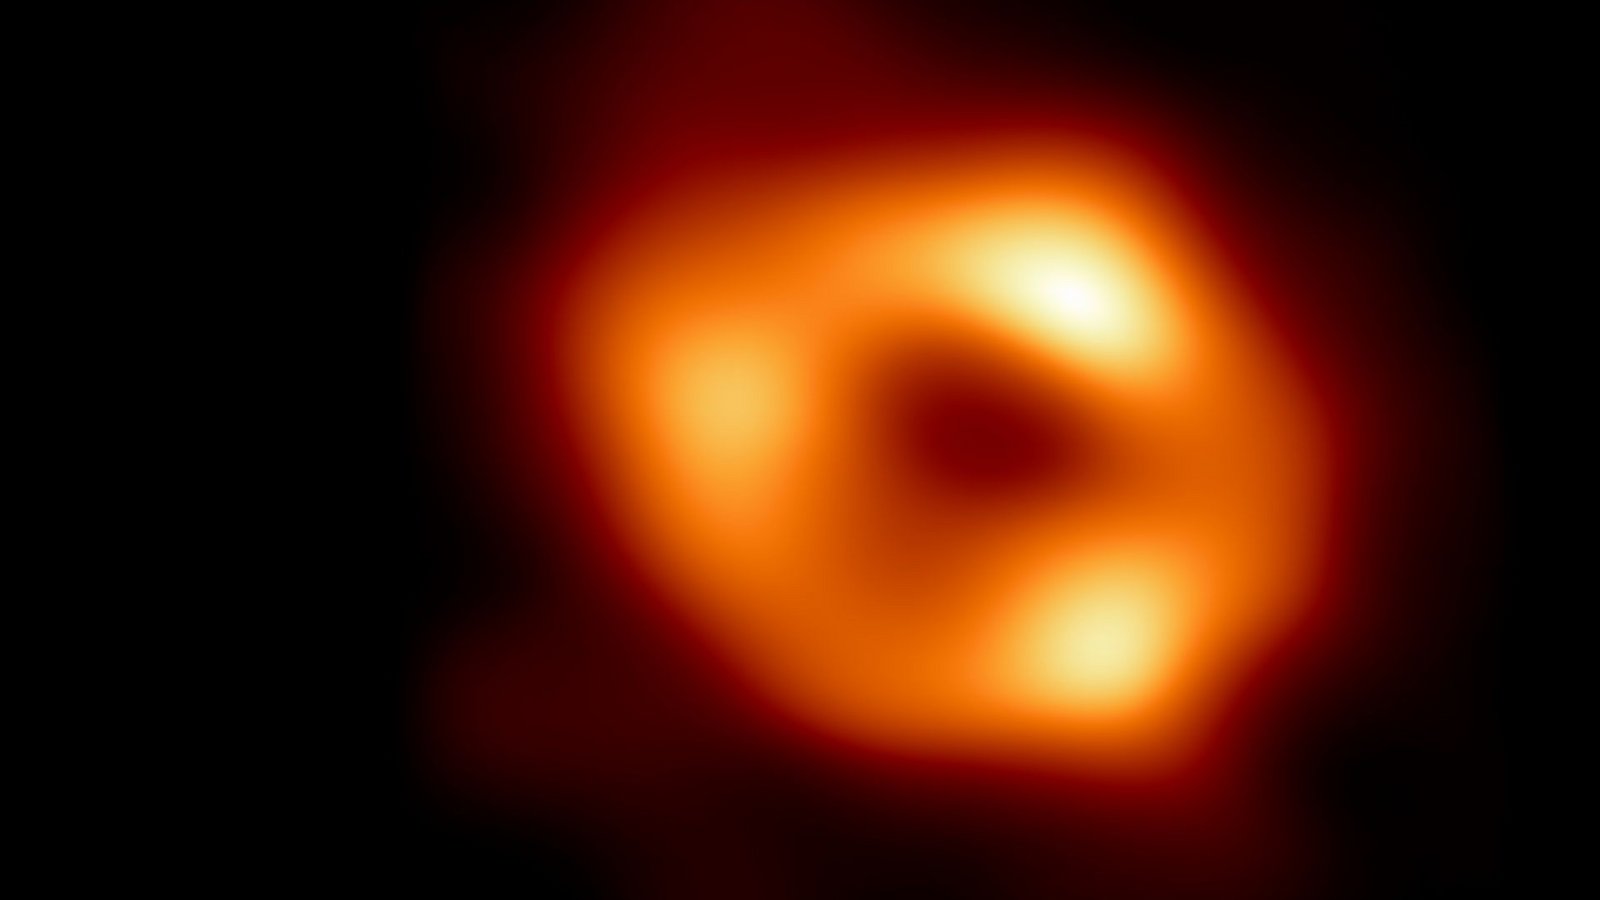 Das  ist das erste Bild von Sagittarius A* –  dem Schwarzen Loch im Zentrum unser Galaxie, der Milchstraße (undatiertes Handout, das am 12. Mai 2022 freigegeben wurde).Foto: EHT collaboration/dpa